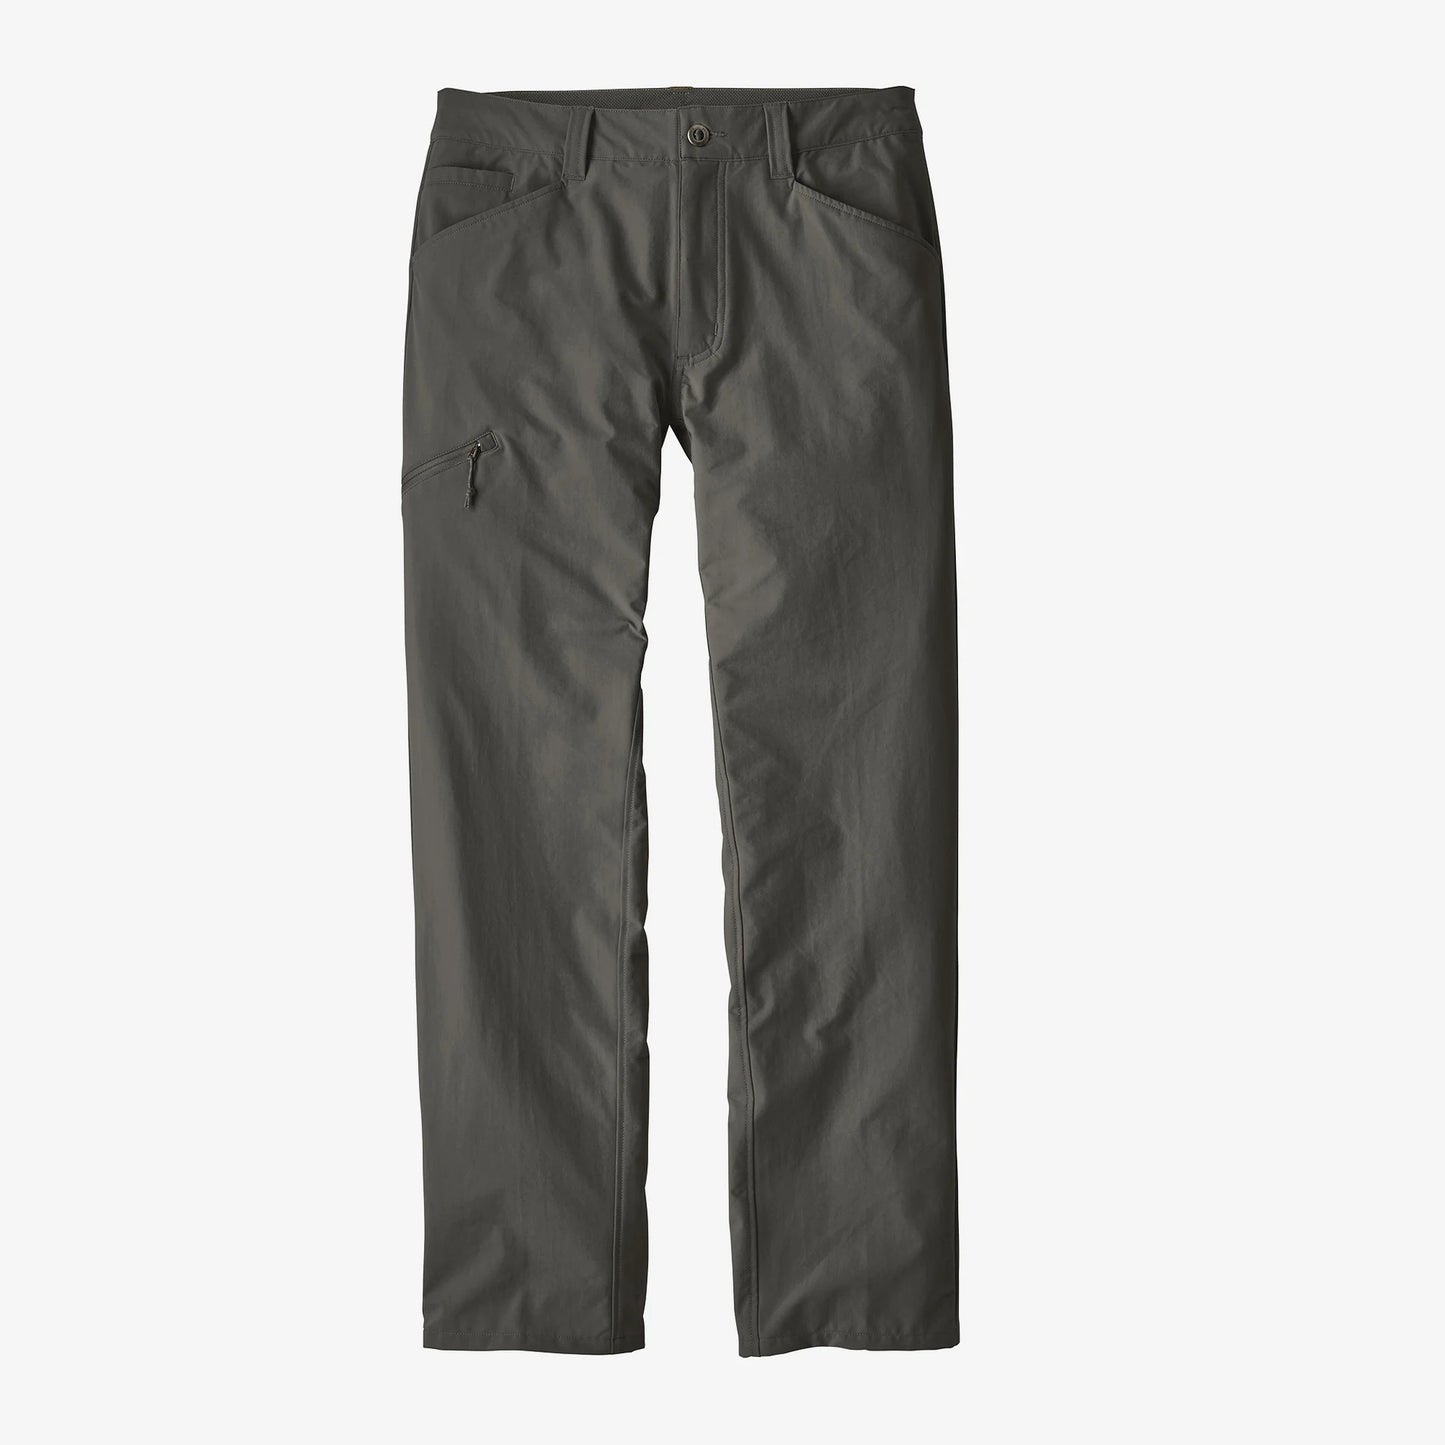 Patagonia Men's Quandary Pants - Short